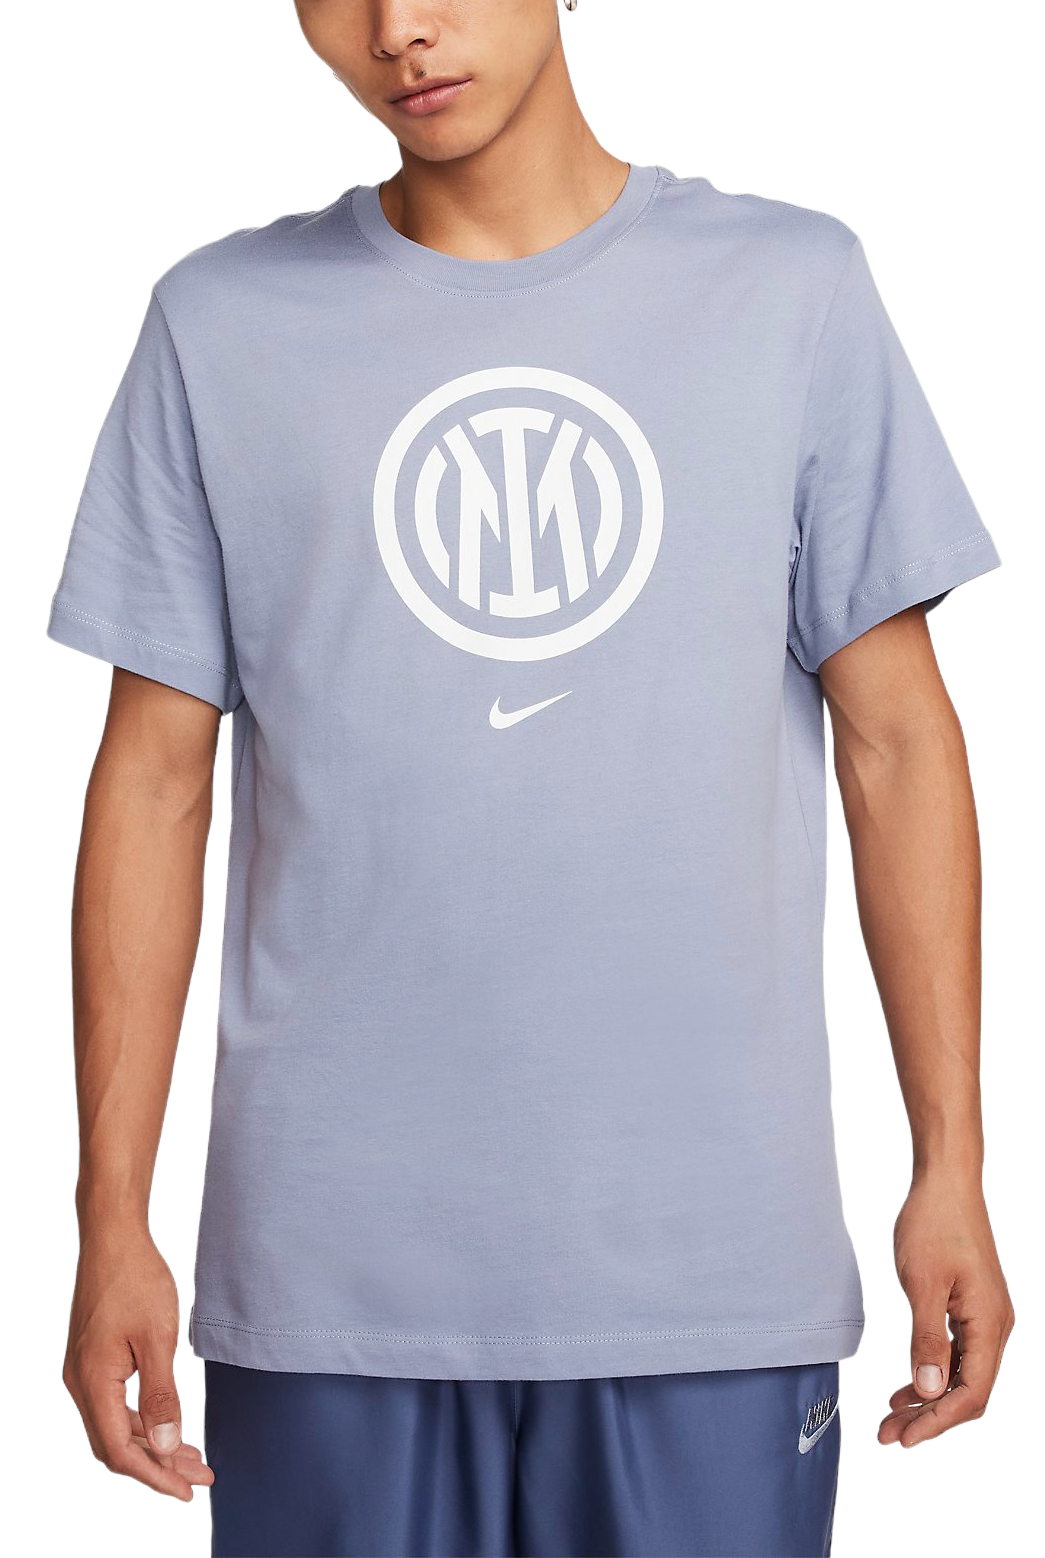 Tee-shirt Nike INTER M NK CREST TEE